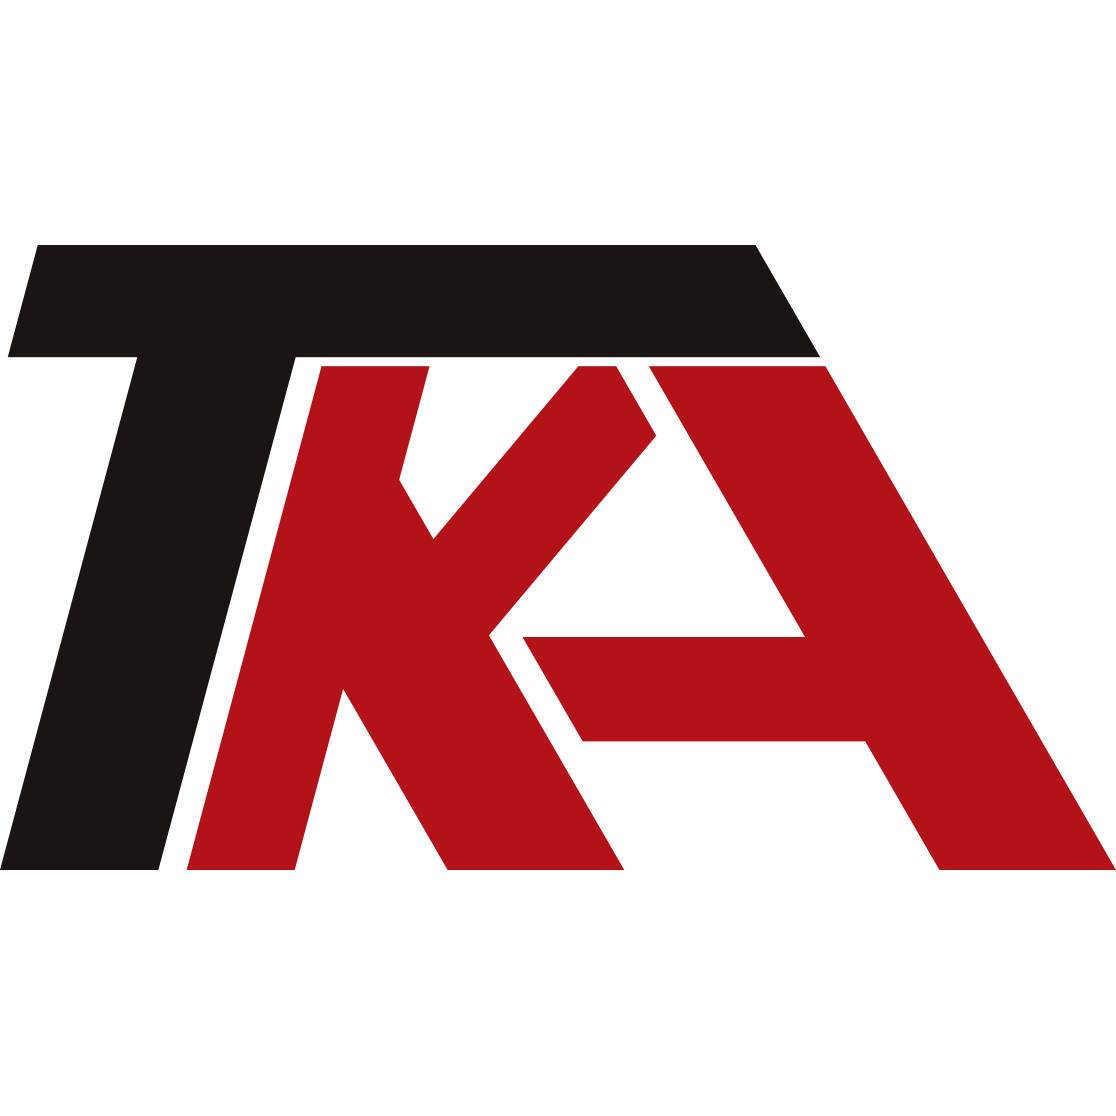 TKA Logo - TKA E-Sports - Leaguepedia | League of Legends Esports Wiki